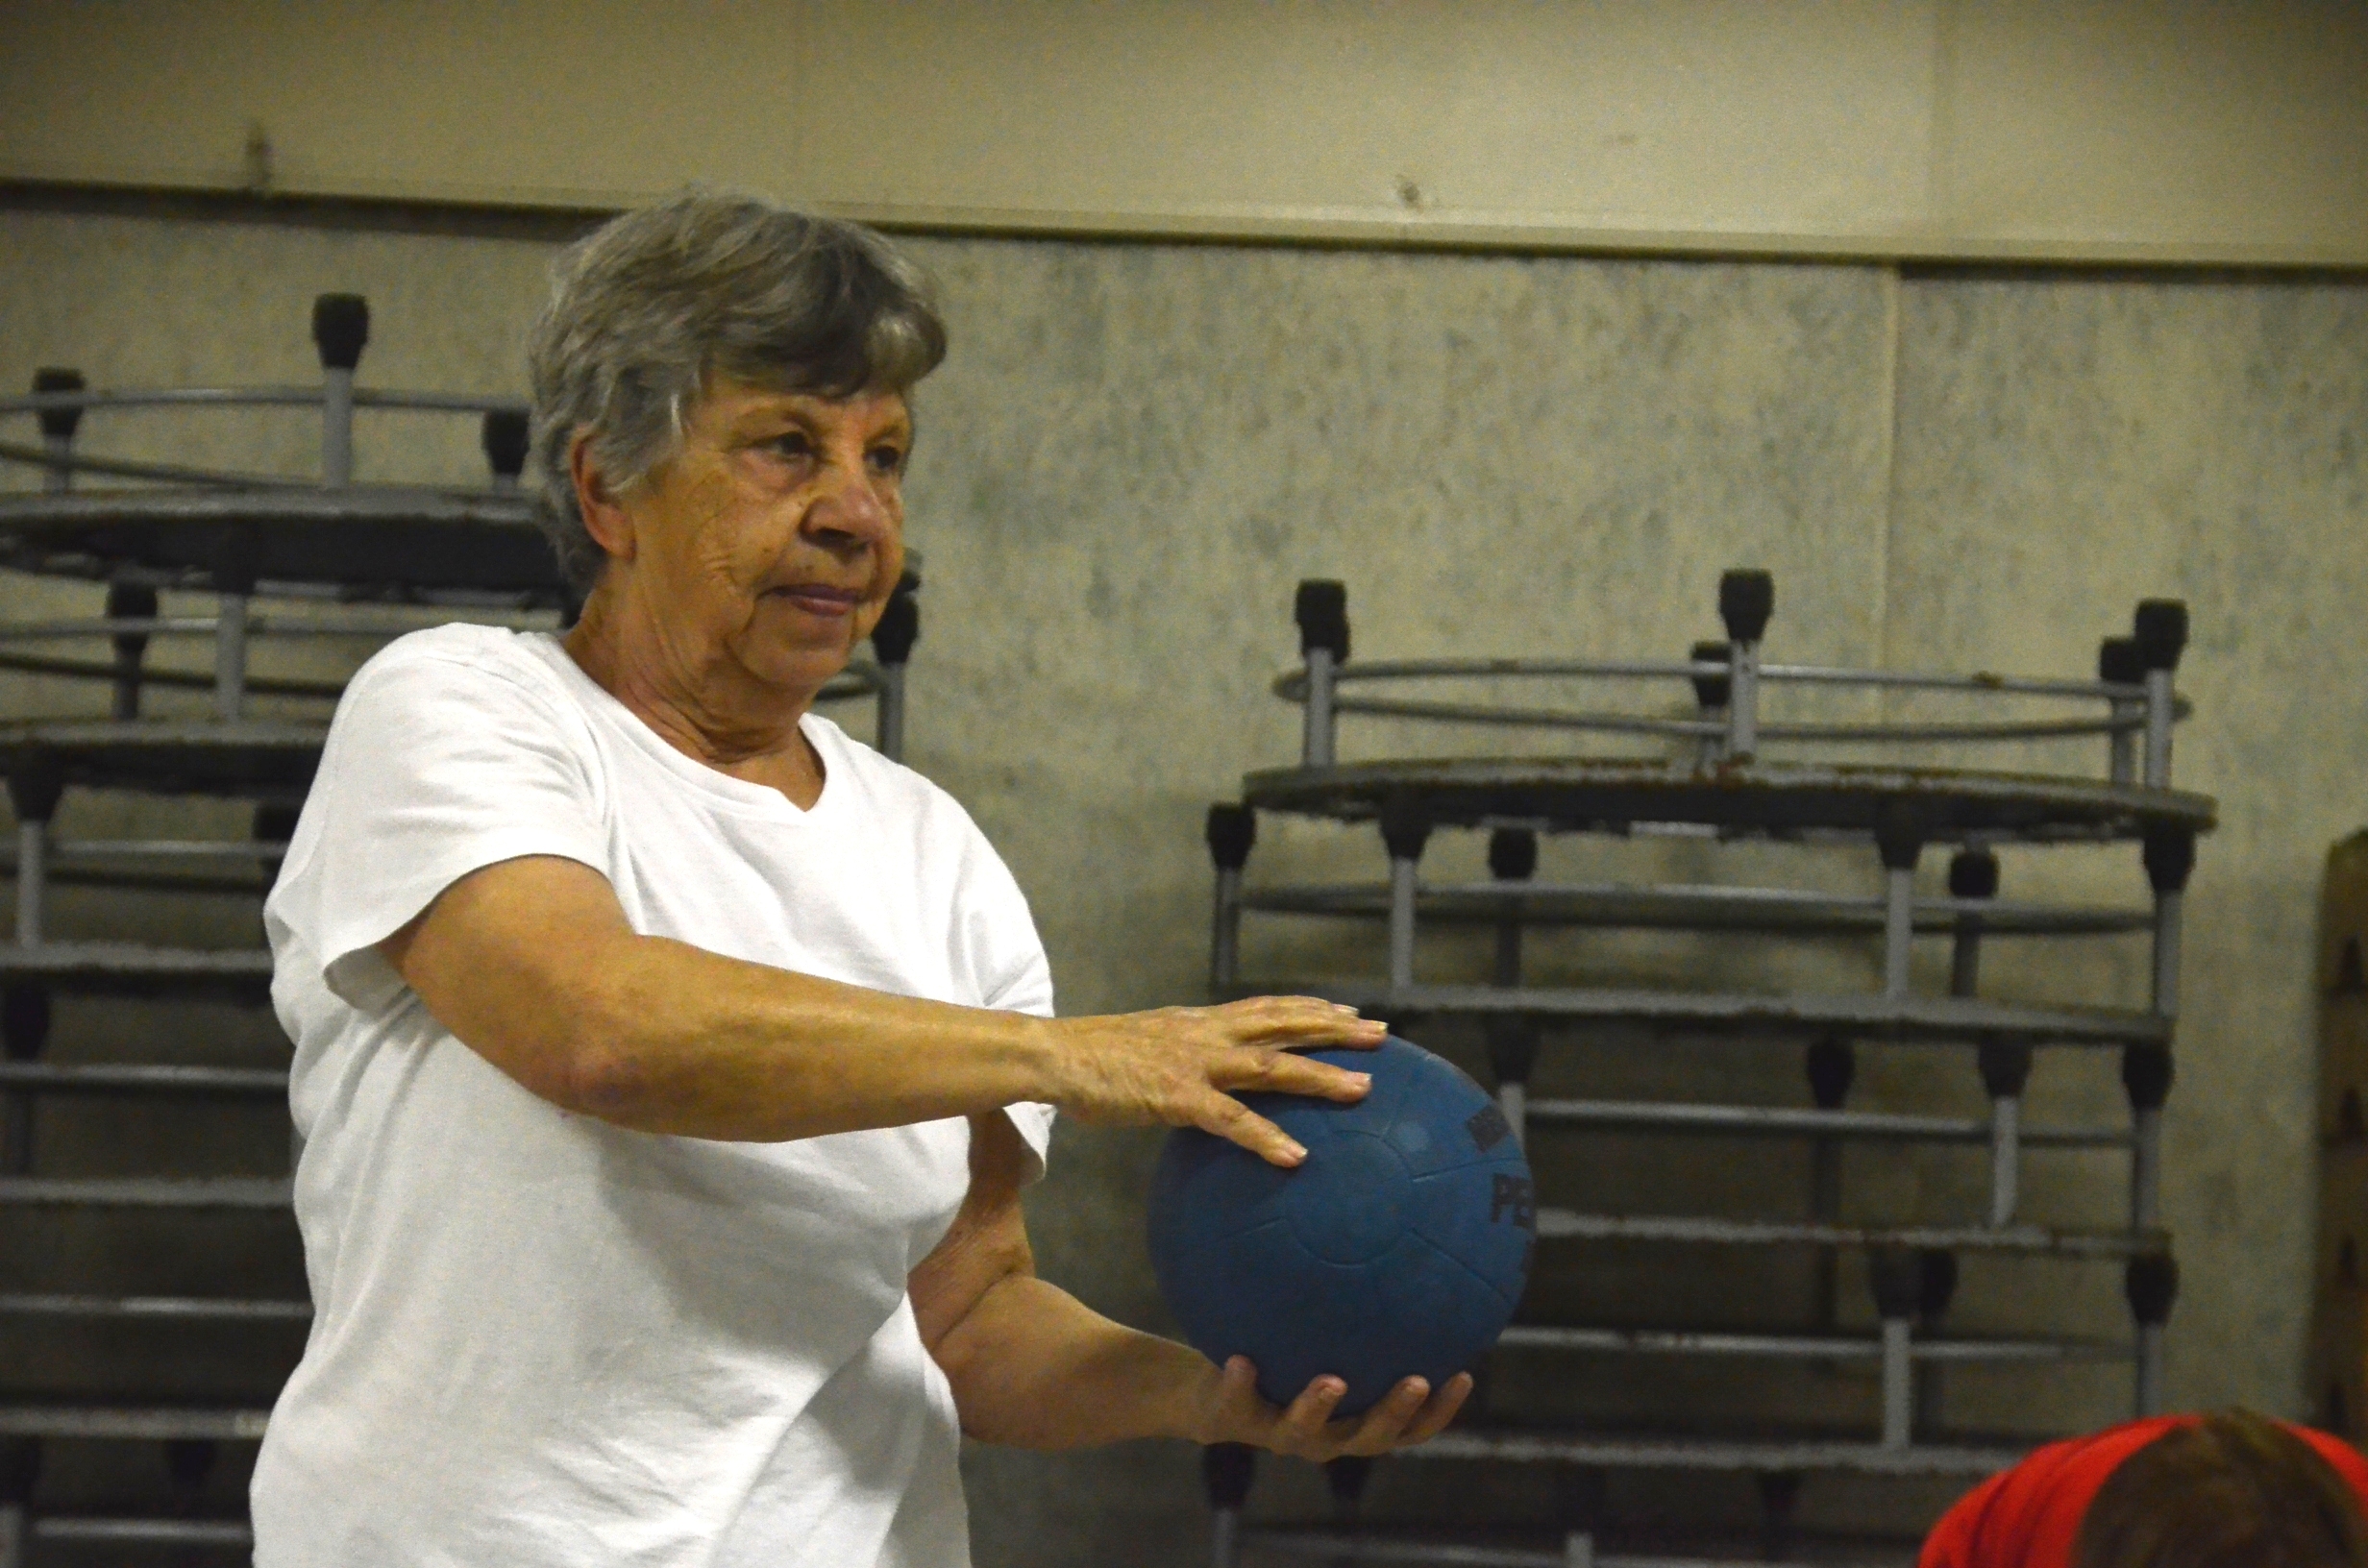 Na imagem, uma idosa está segurando uma bola com as duas mãos, fazendo uma espécie de exercício. Seus braços e a bola azul estão para o lado direito